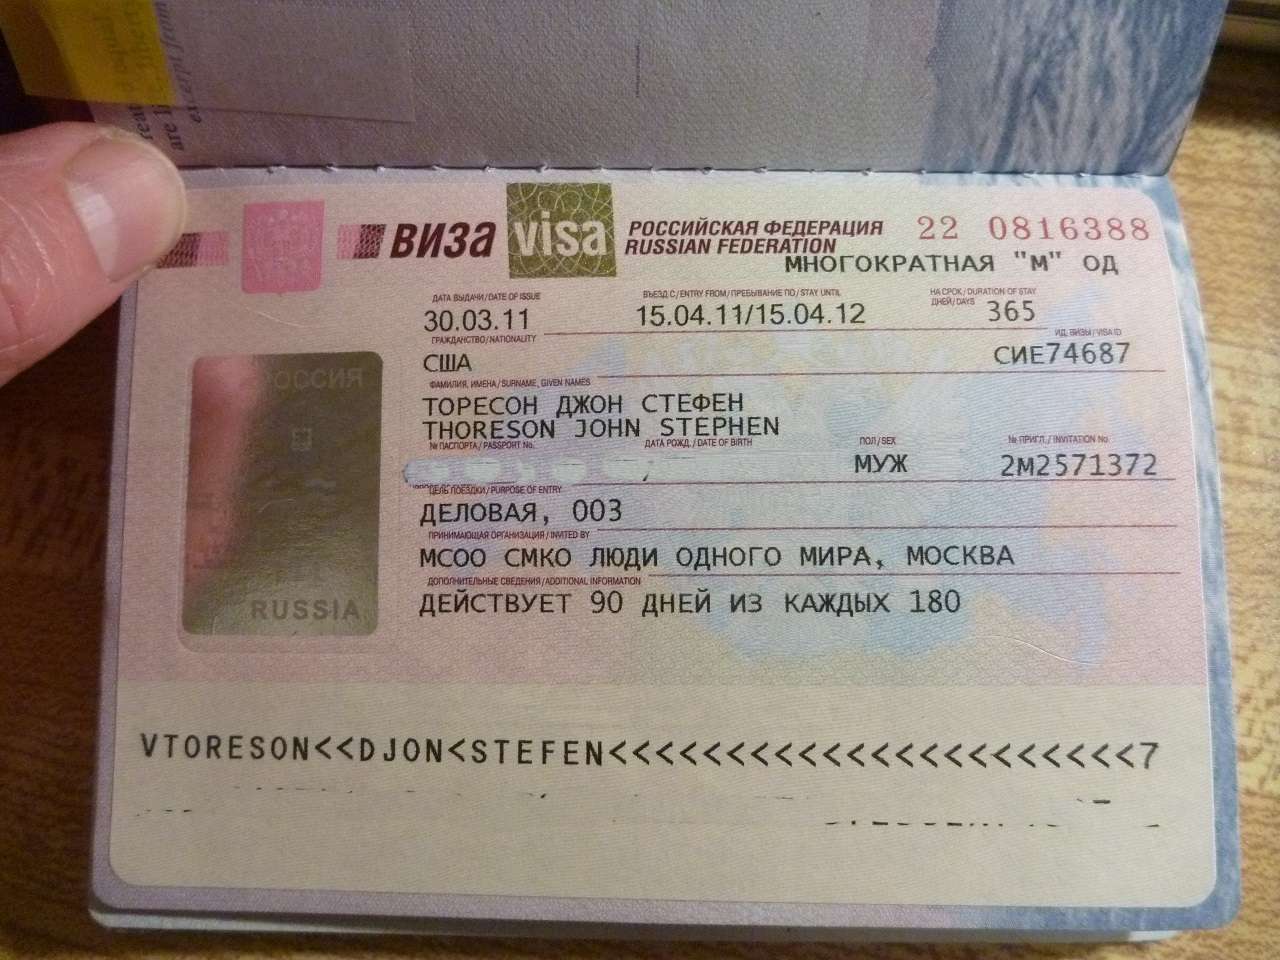 سفر به روسیه بدون ویزا